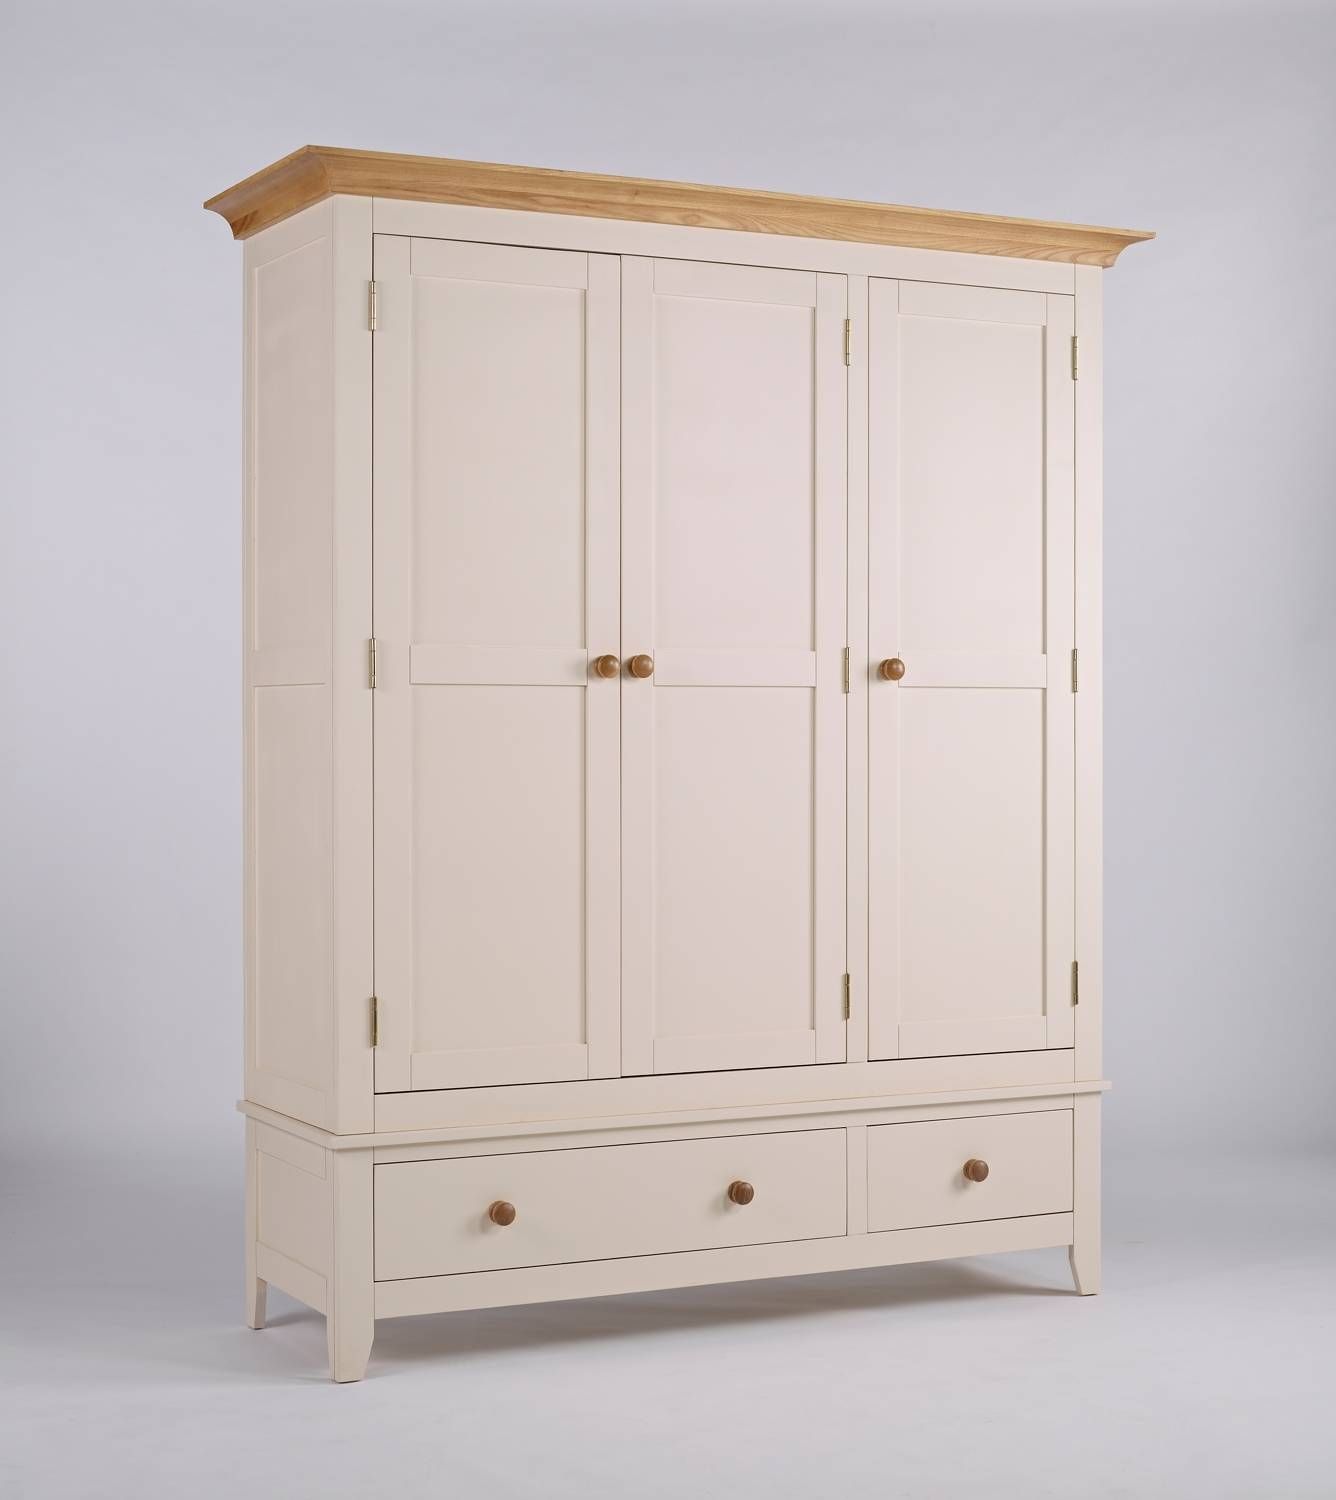 New England Ivory Large Wardrobe | Hampshire Furniture Regarding Large White Wardrobes With Drawers (Photo 12 of 15)